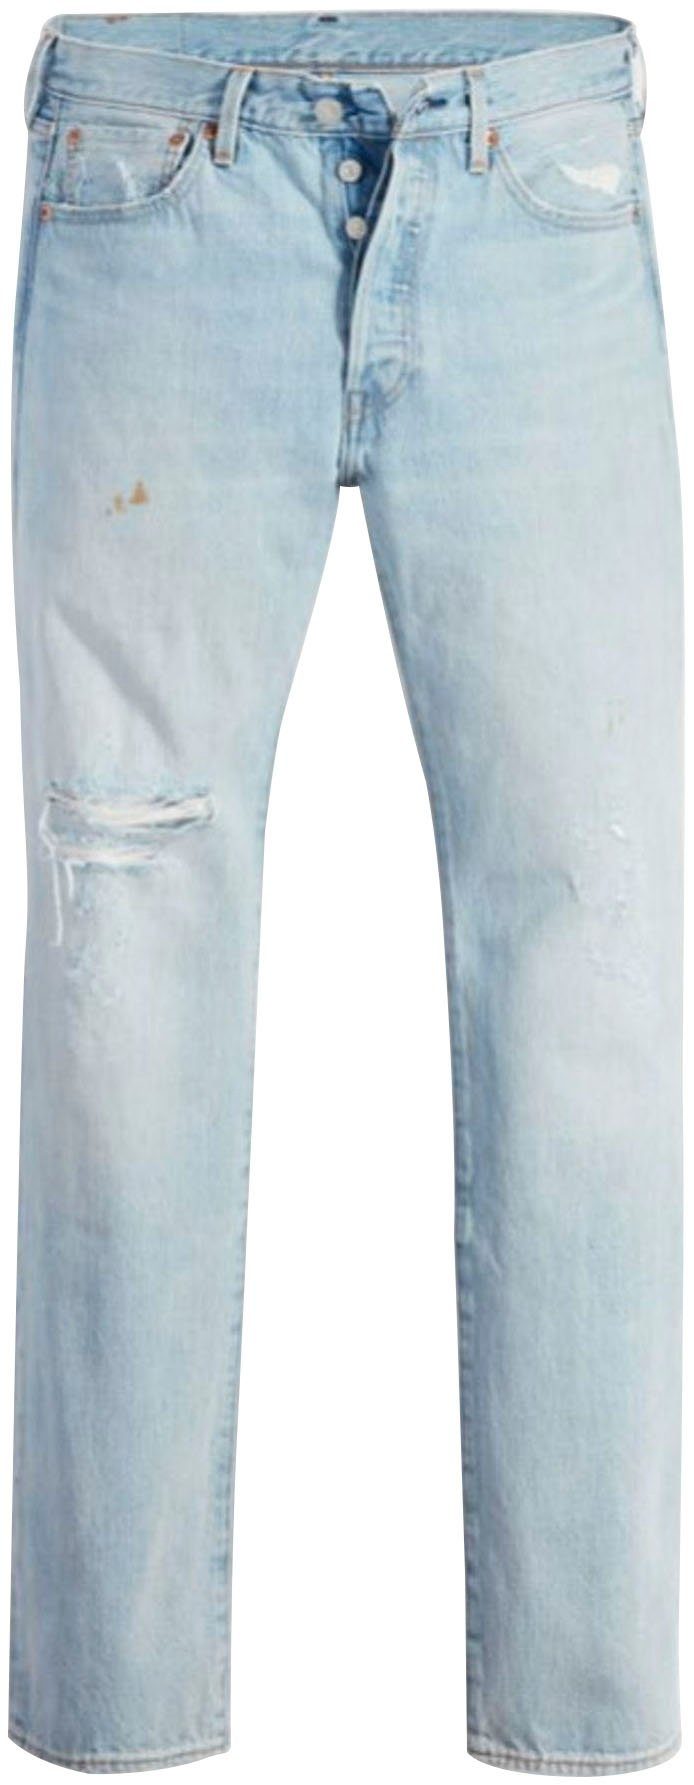 INDIGO 501 ORIG Markenlabel Destroyed-Jeans DESTRUCTED mit Levi's® LIGHT VI'S